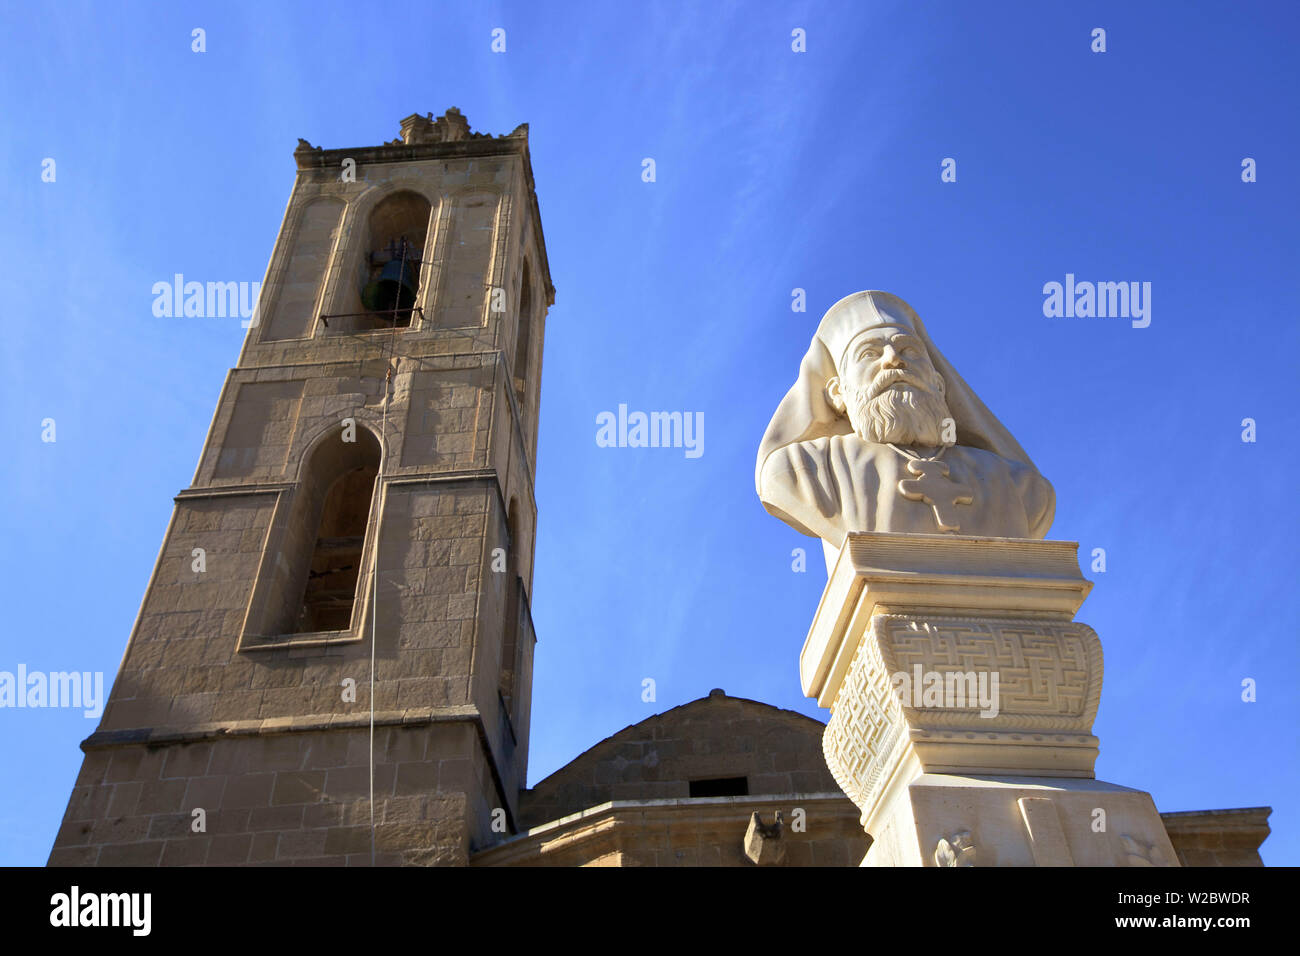 Buste de l'Archevêque Kyprianos et Cathédrale de Saint Jean le Théologien, Nicosie, Chypre du Sud, Méditerranée orientale Banque D'Images